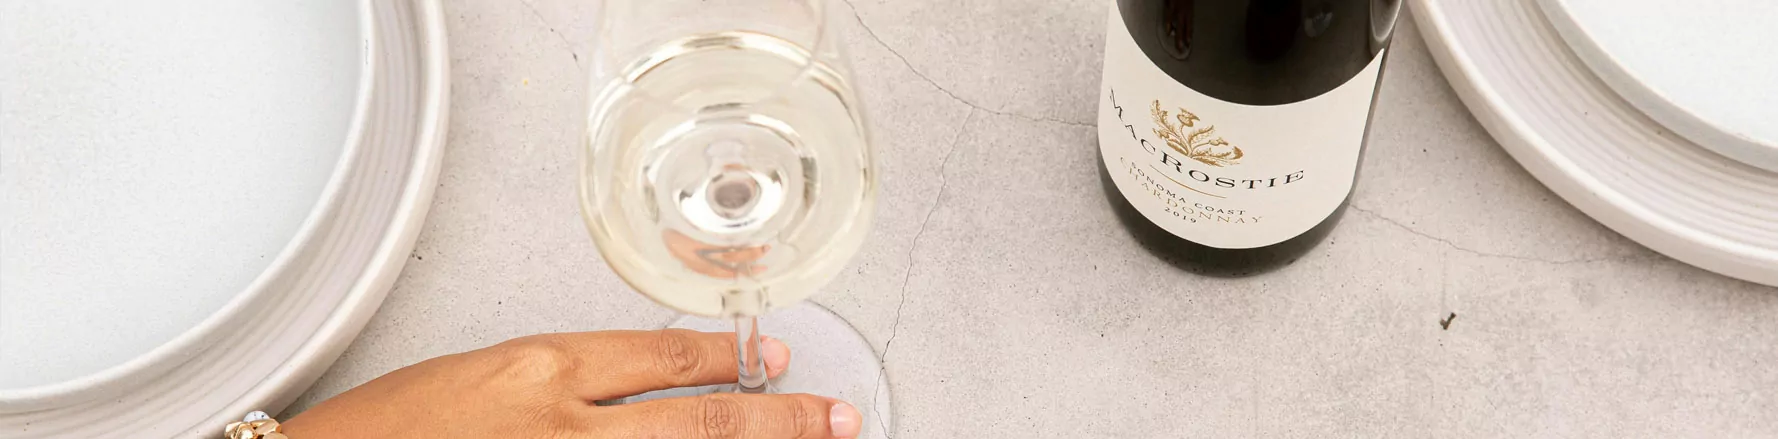 “Best White Wines” Sonoma Coast Chardonnay intro image